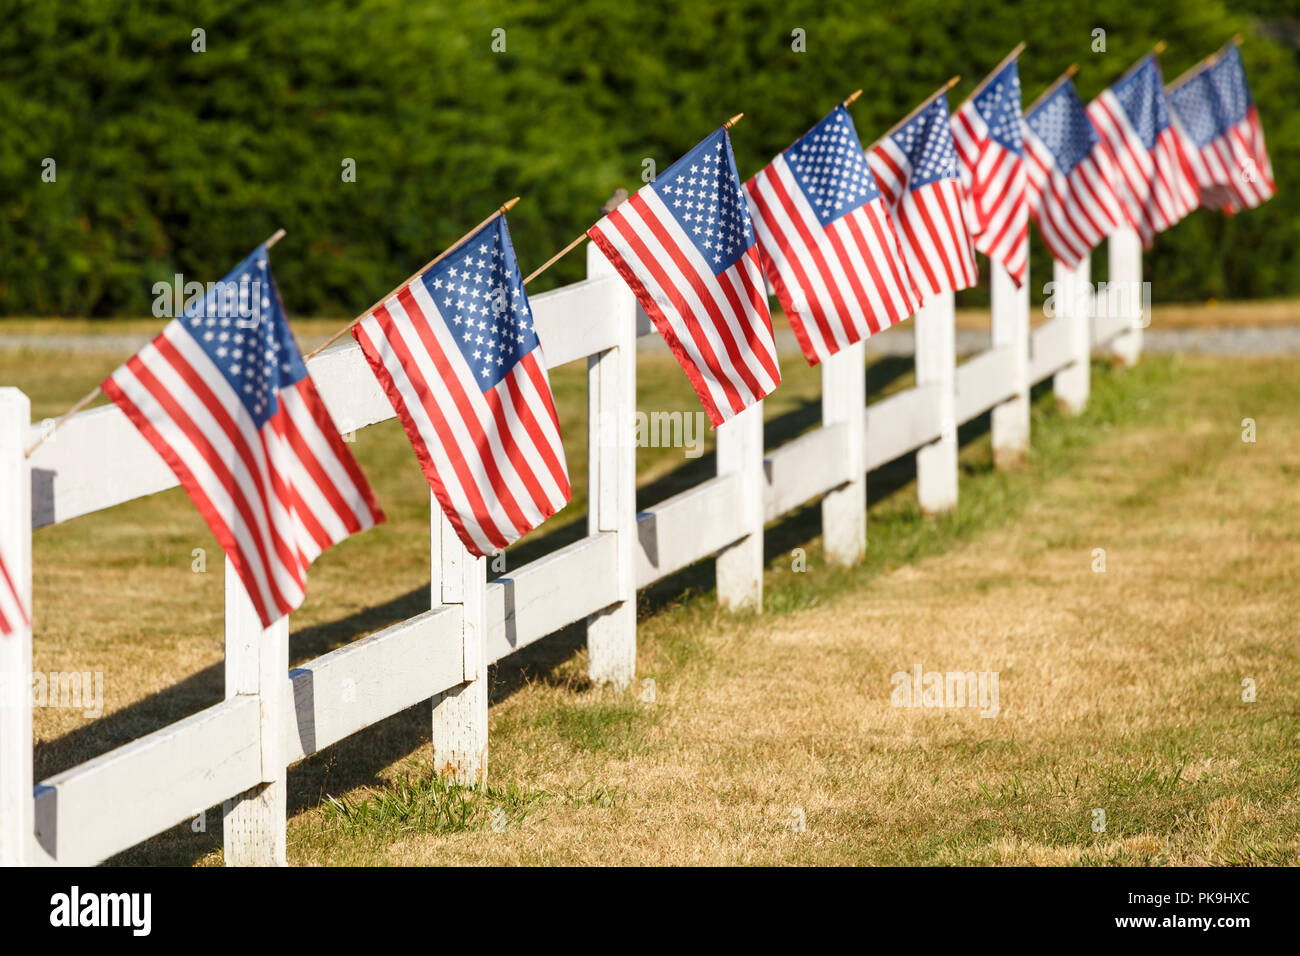 Patriotische Anzeige der amerikanische Flaggen schwenkten auf weißen Lattenzaun. Typische Kleinstadt Americana 4. Juli Unabhängigkeitstag Dekorationen. Stockfoto